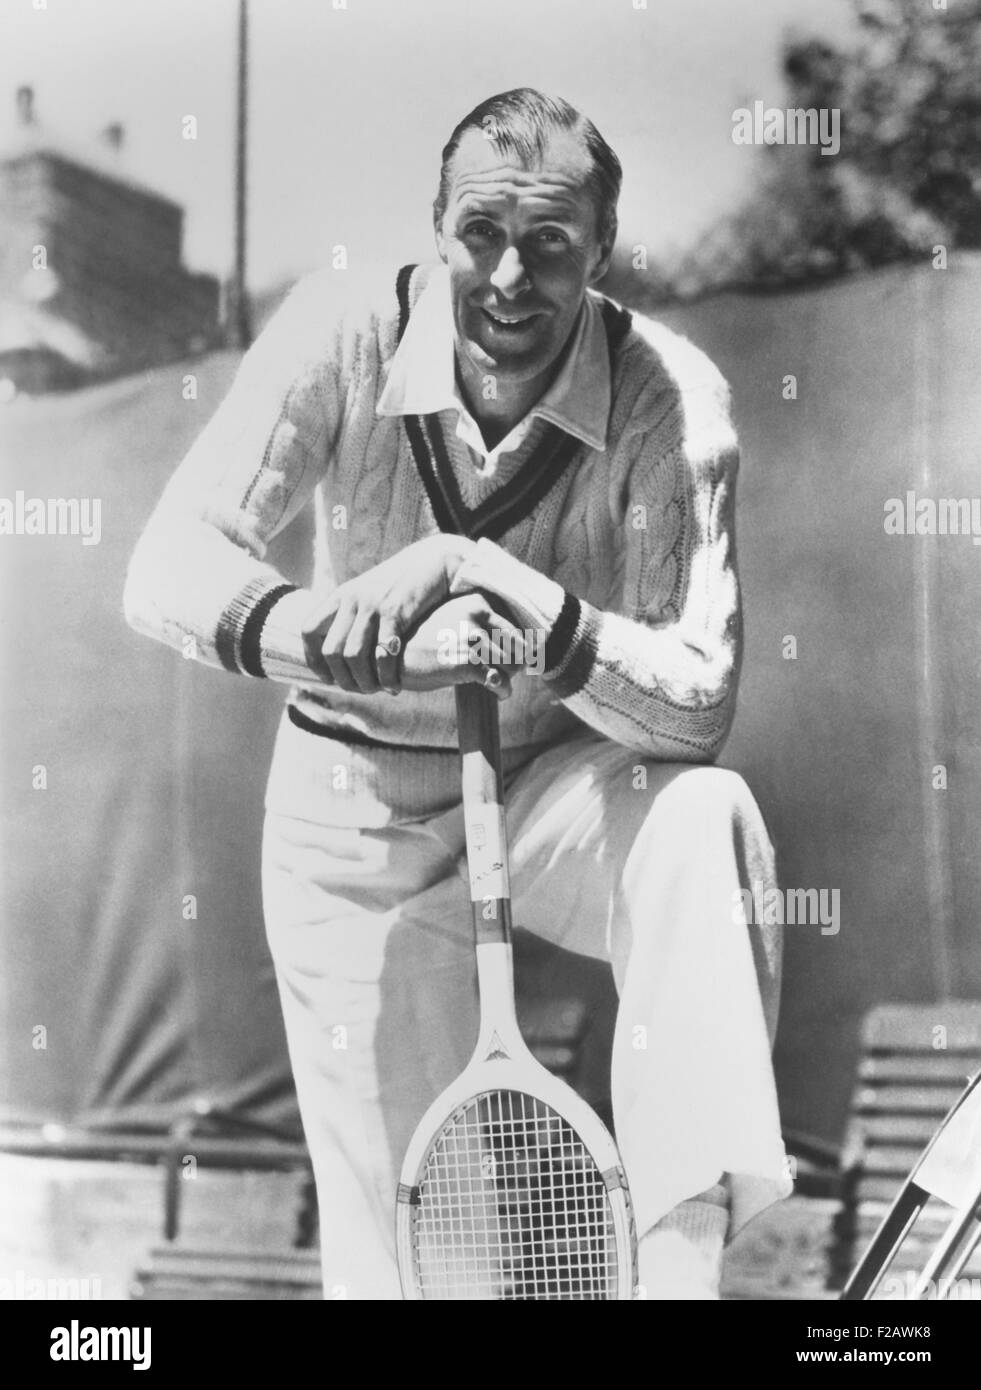 Bill Tilden, ancien champion de tennis, ca. 1940. Comme il l'éliminé du jeu compétitif, il a été entraîneur et a donné des cours privés à country clubs de Los Angeles. CSU (2015   1331 11) Banque D'Images